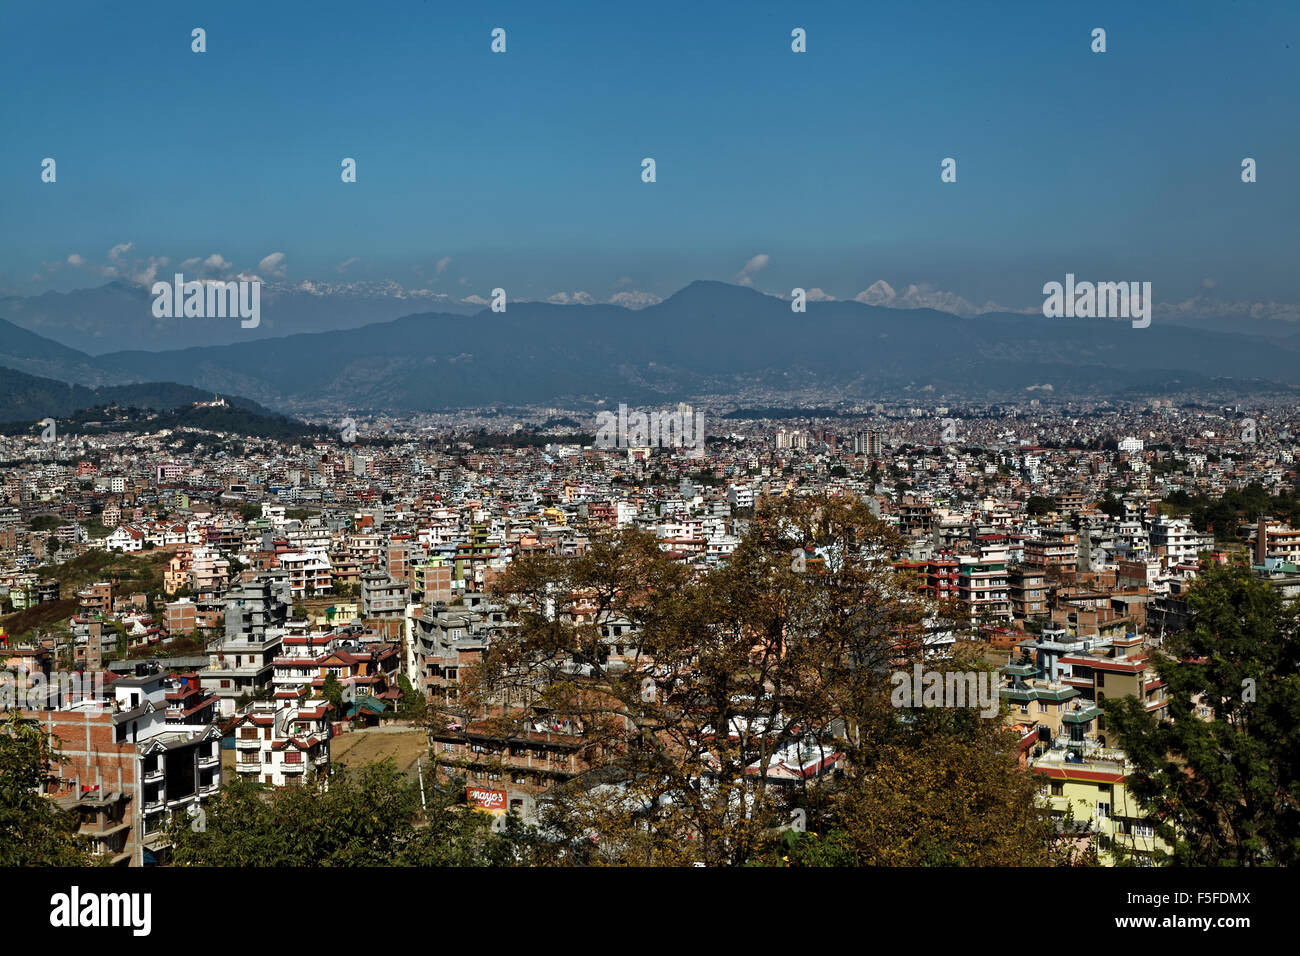 Panaroma vista della valle di Kathmandu e l'Himalaya in background presi prima del terremoto nel 2015 Foto Stock